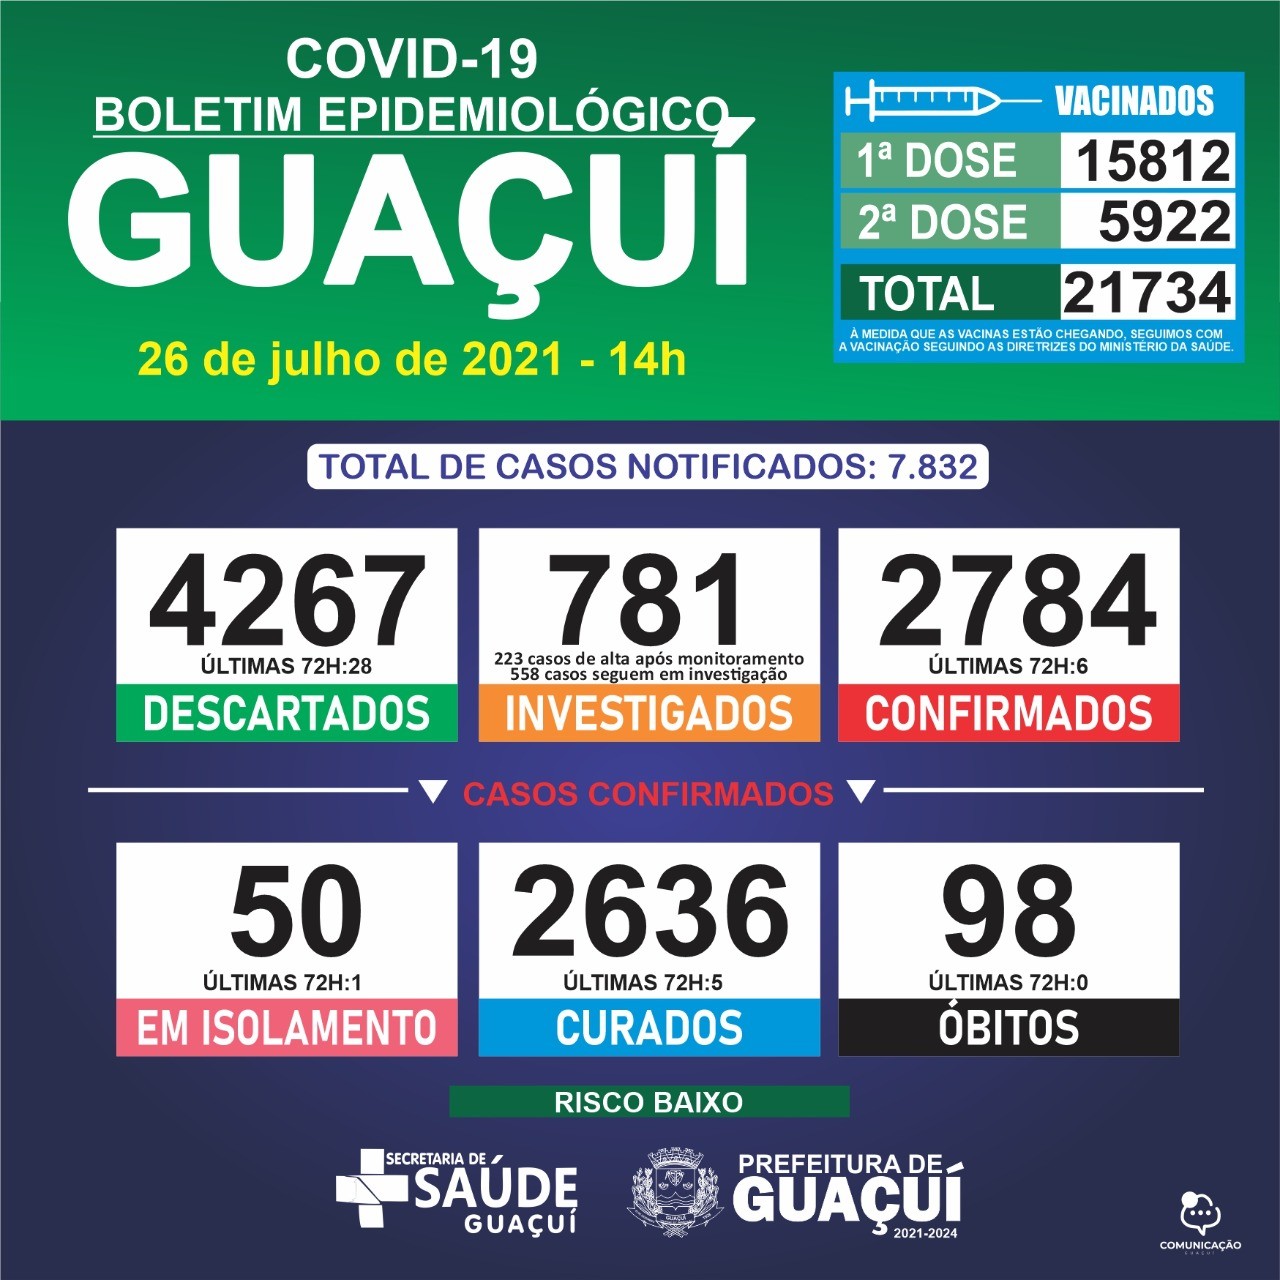 Boletim Epidemiológico 26/07/21: Guaçuí registra 6 casos confirmados e 5 curados nas últimas 72 horas